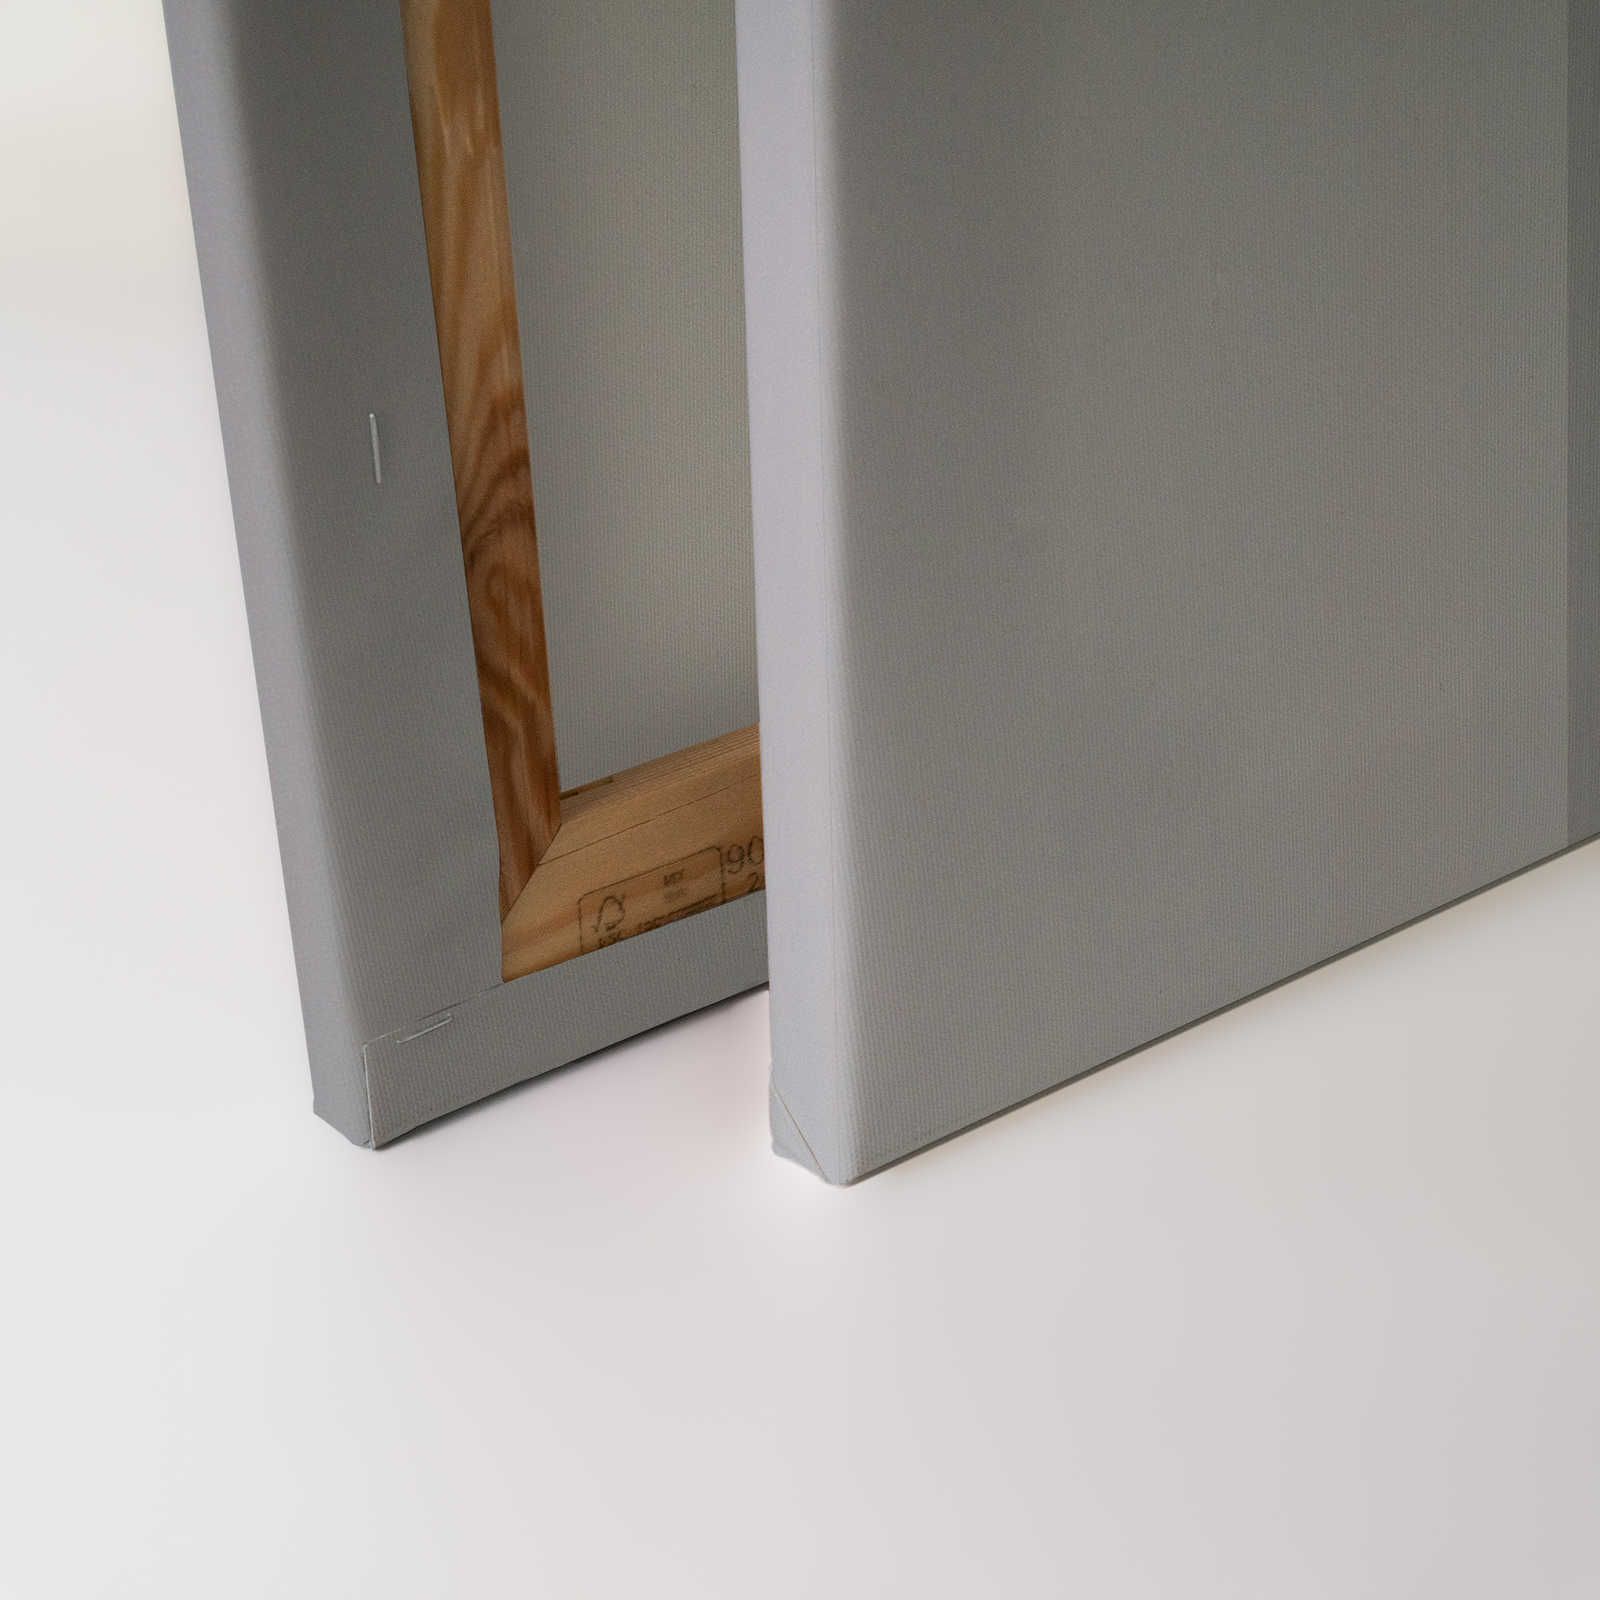             Behind the Wall 1 - Toile 3D gris acier au design minimaliste - 0,90 m x 0,60 m
        